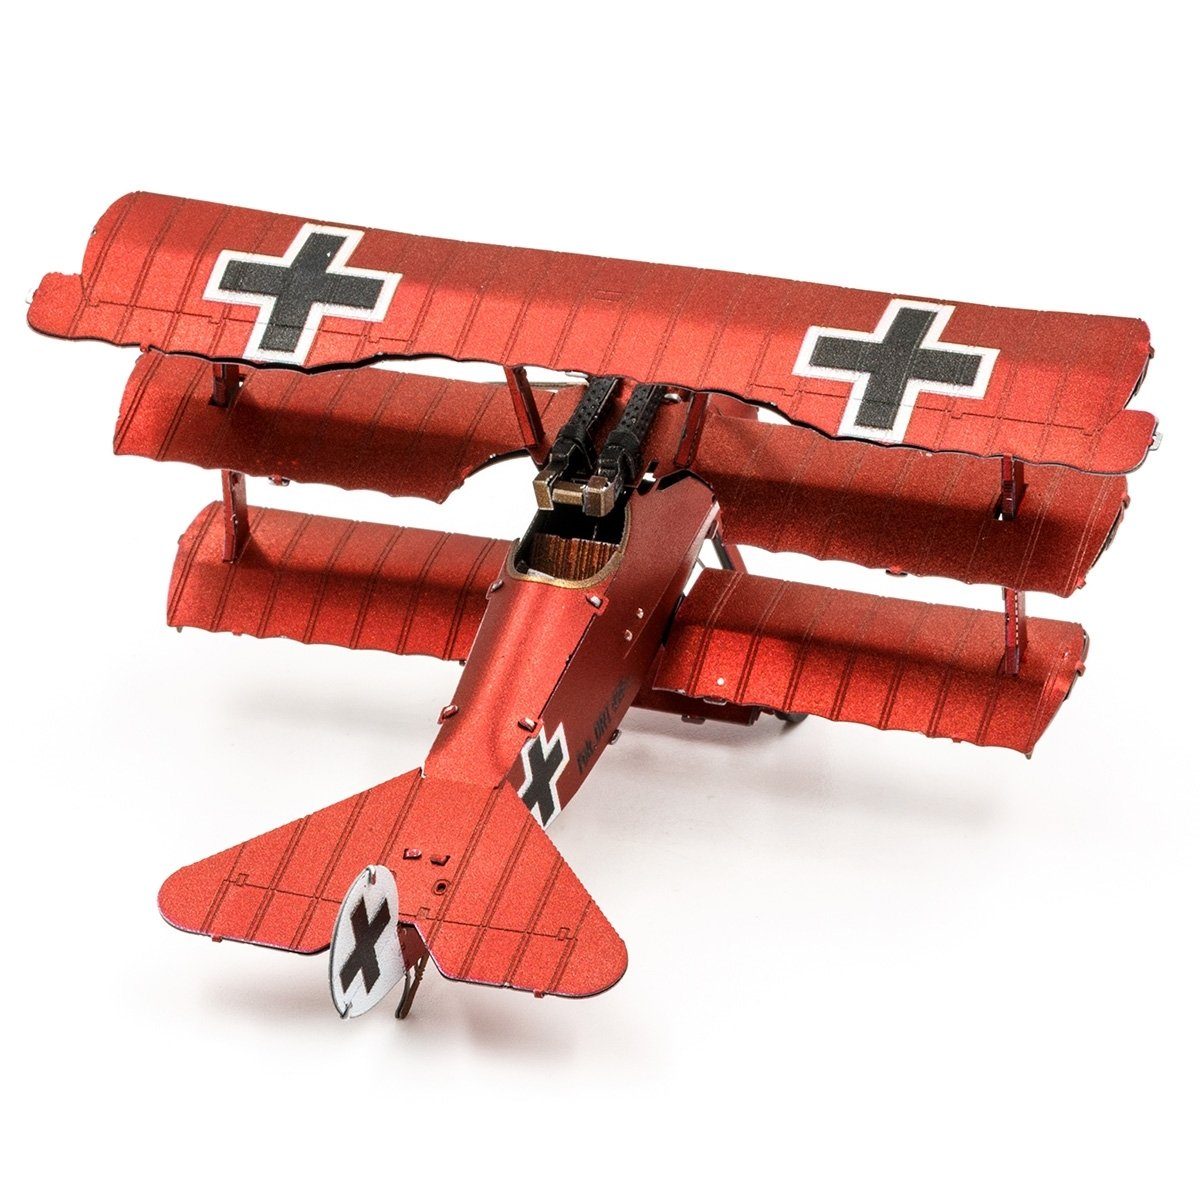 I Modellbausatz Fokker Metall-Bausatz Earth® Metal Dr. detailreicher - Dreidecker-Jagdflugzeug -